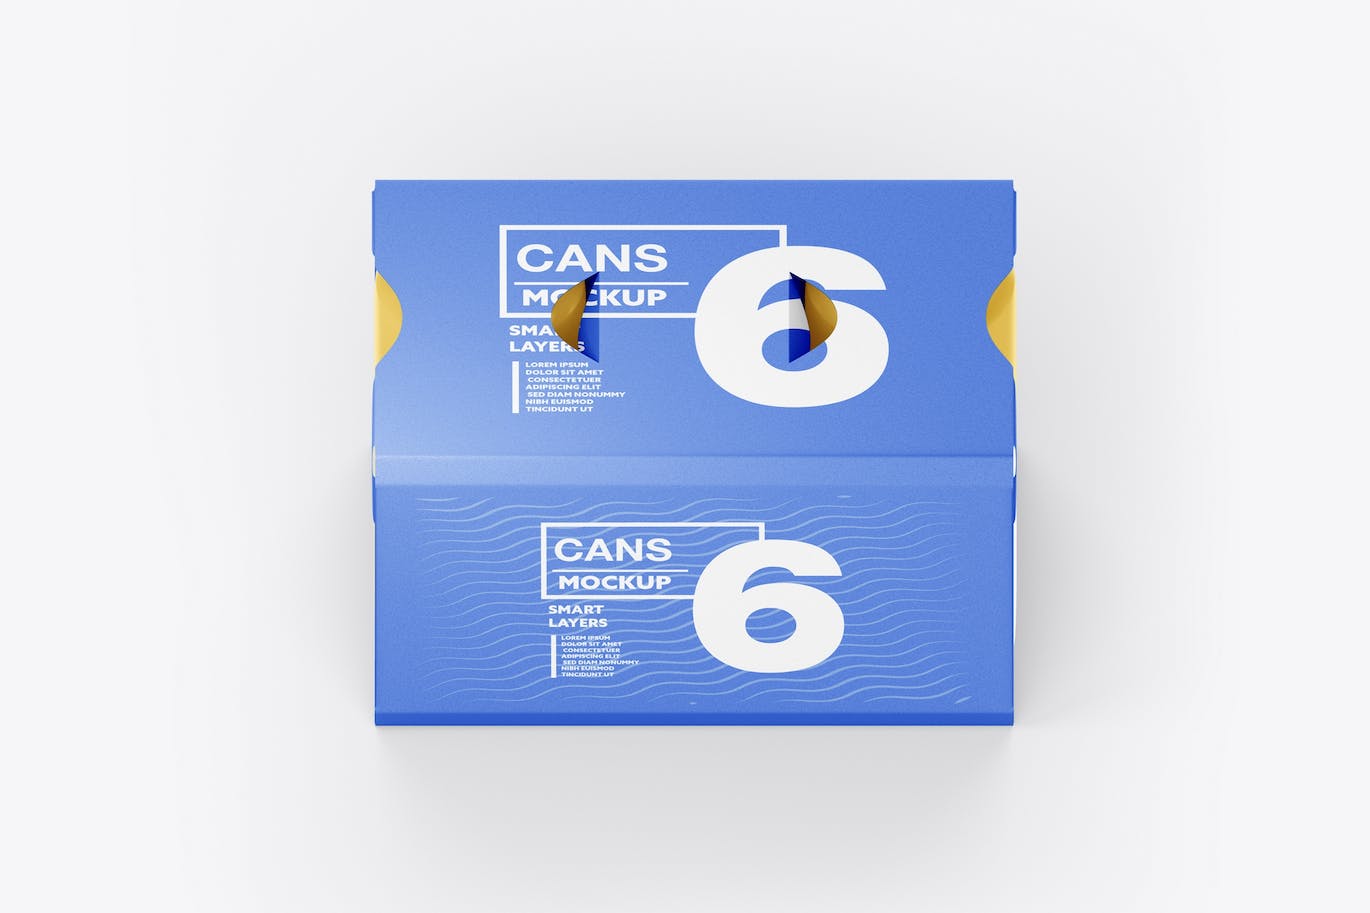 6罐装易拉罐纸箱包装设计样机 6 Cans Pack Mockup 样机素材 第1张